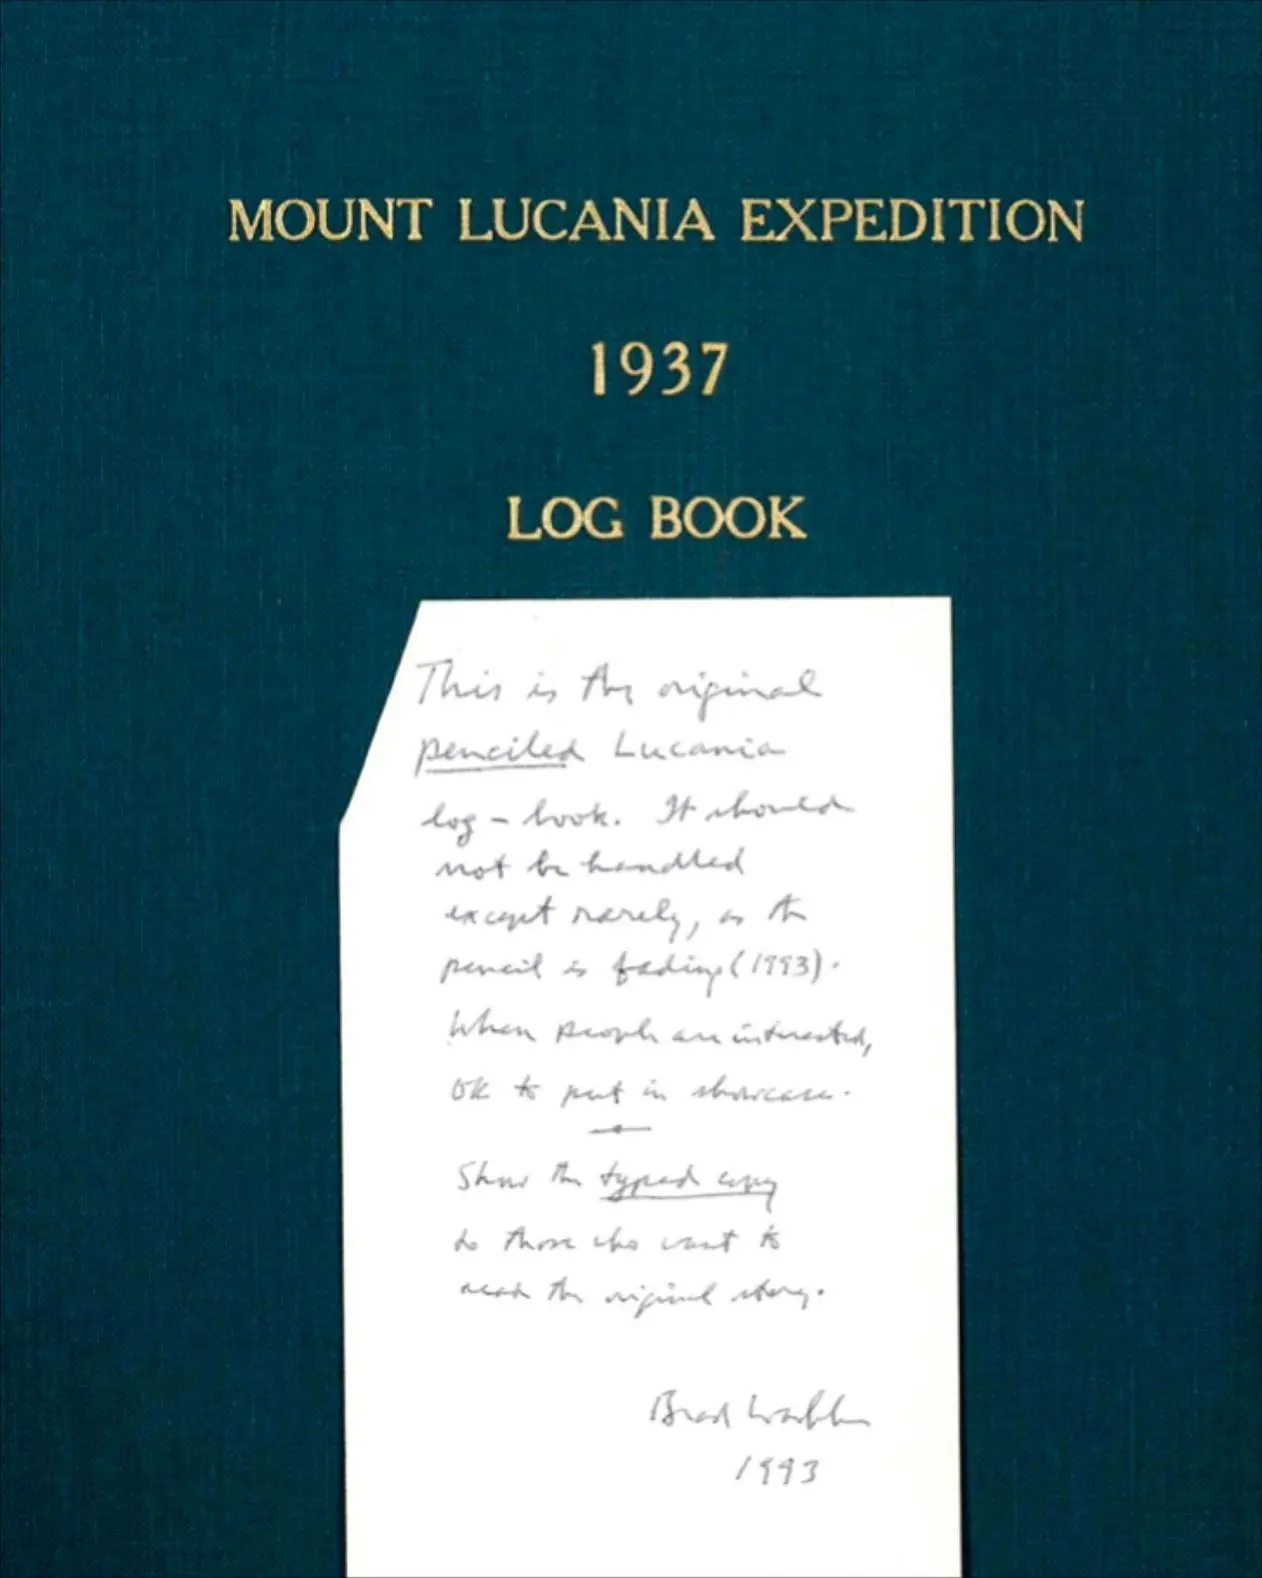 Два роки тому Гріффін Пост прочитав історію виживання Девіда Робертса про Бредфорда Вашборна 2007 року під назвою «Порятунок з Лукейнії: Епічна історія виживання» (Escape from Lucania: An Epic Story of Survival)